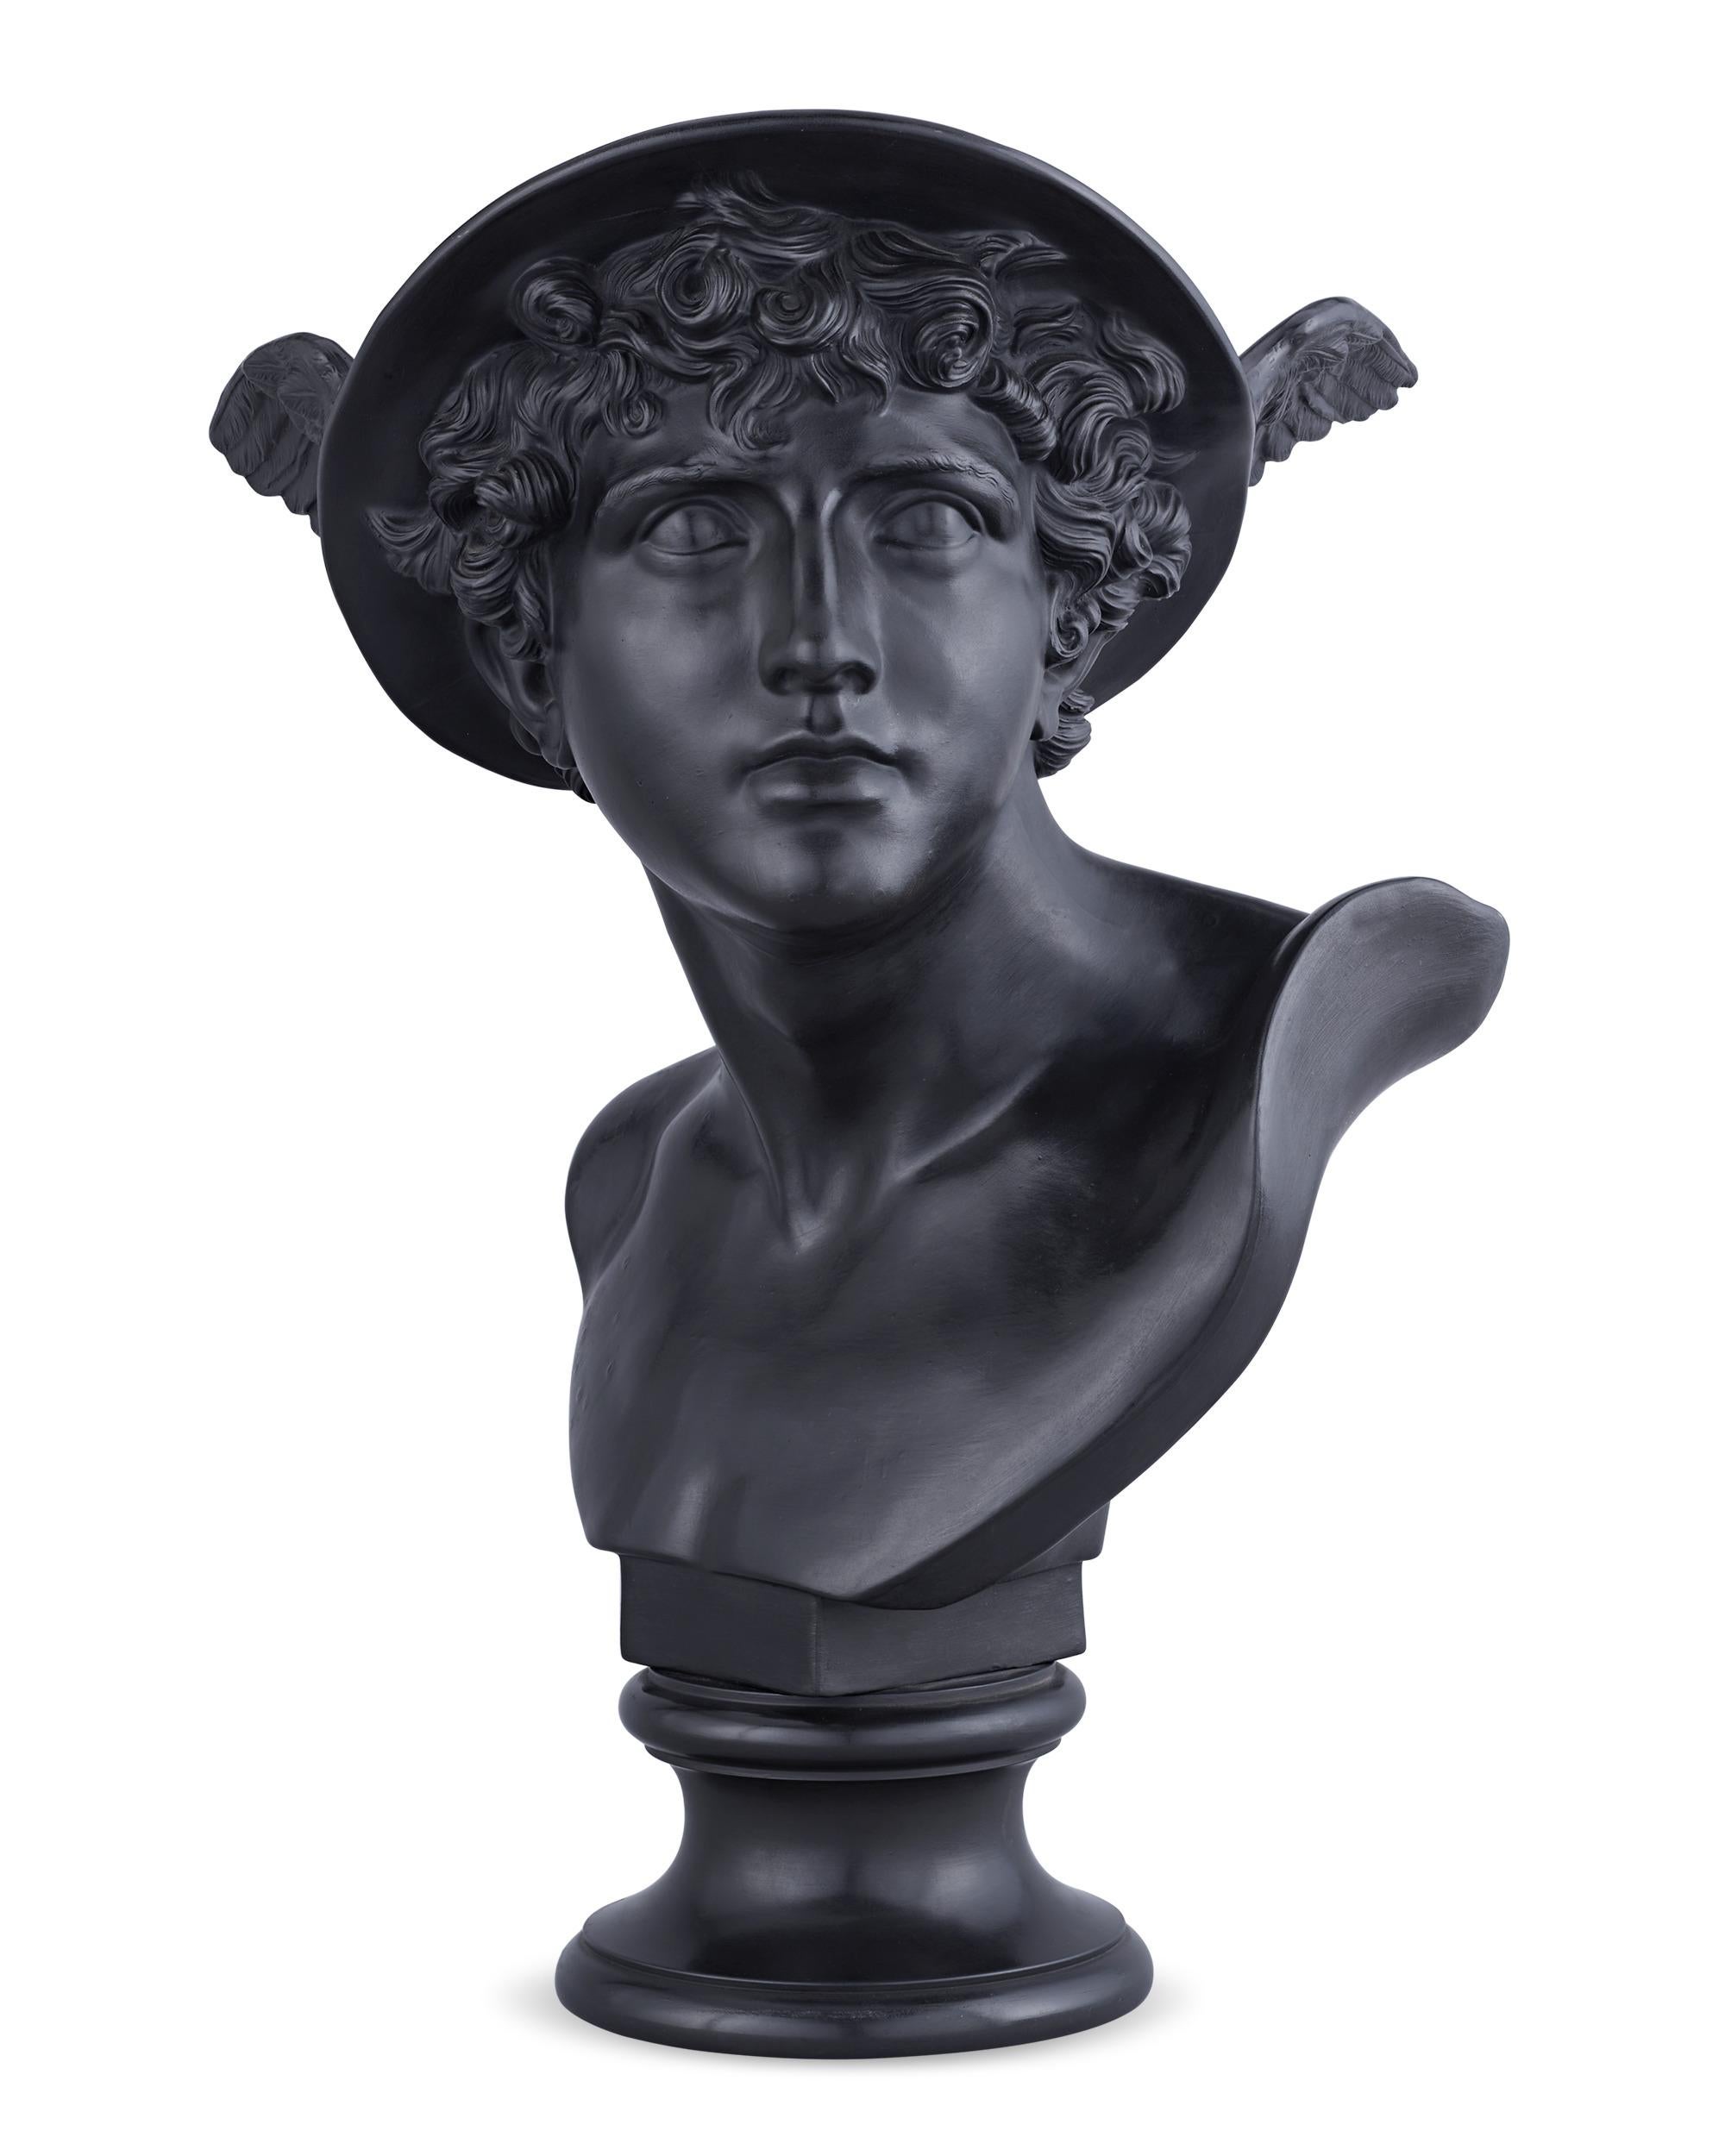 Este modelo se atribuye a John Flaxman, hijo, célebre escultor, ilustrador y diseñador inglés, considerado uno de los principales artistas del estilo neoclásico en Inglaterra. En este busto de basalto negro expertamente representado, Mercurio, el